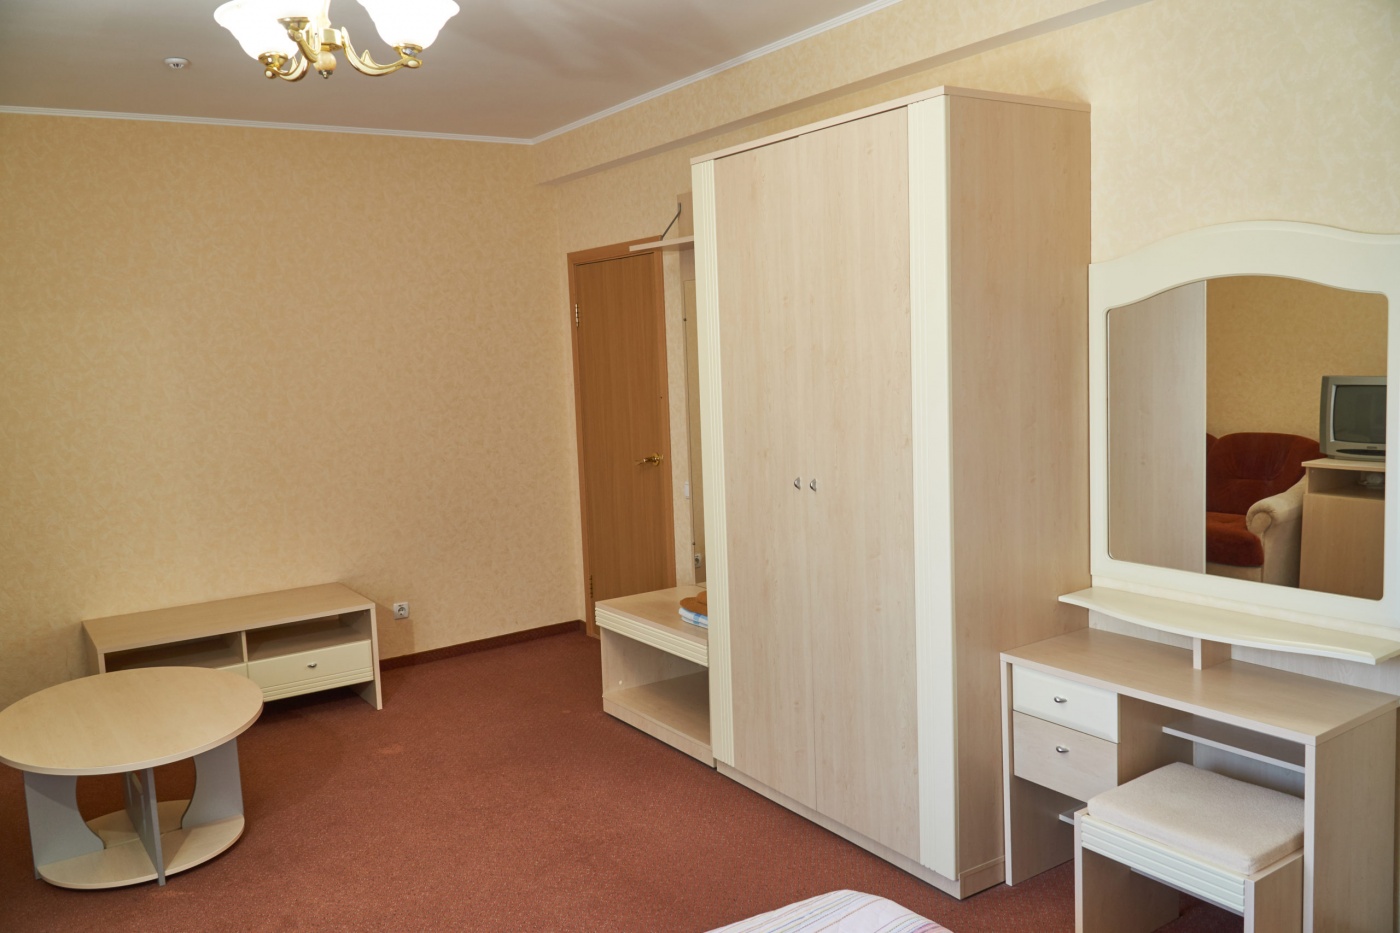  Отель «Сказка» Республика Крым Стандарт Улучшенный 2-местный, фото 2